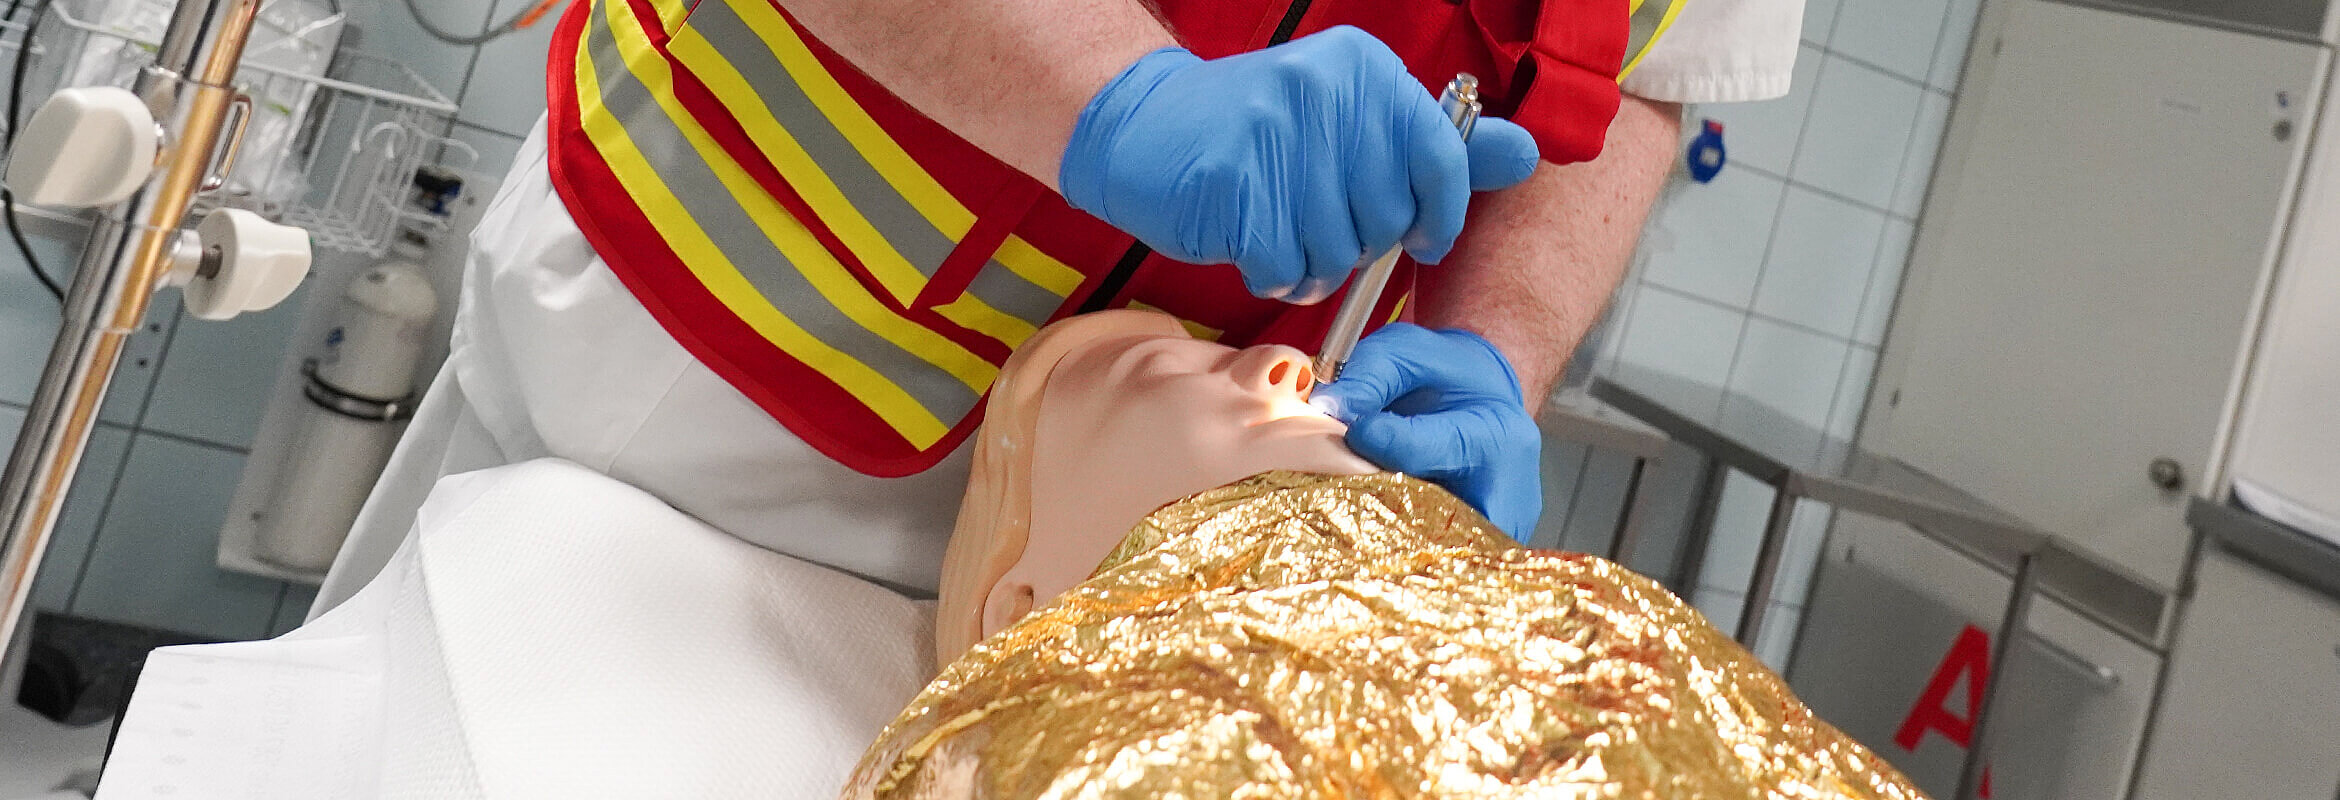 Intubationstraining an einer Puppe